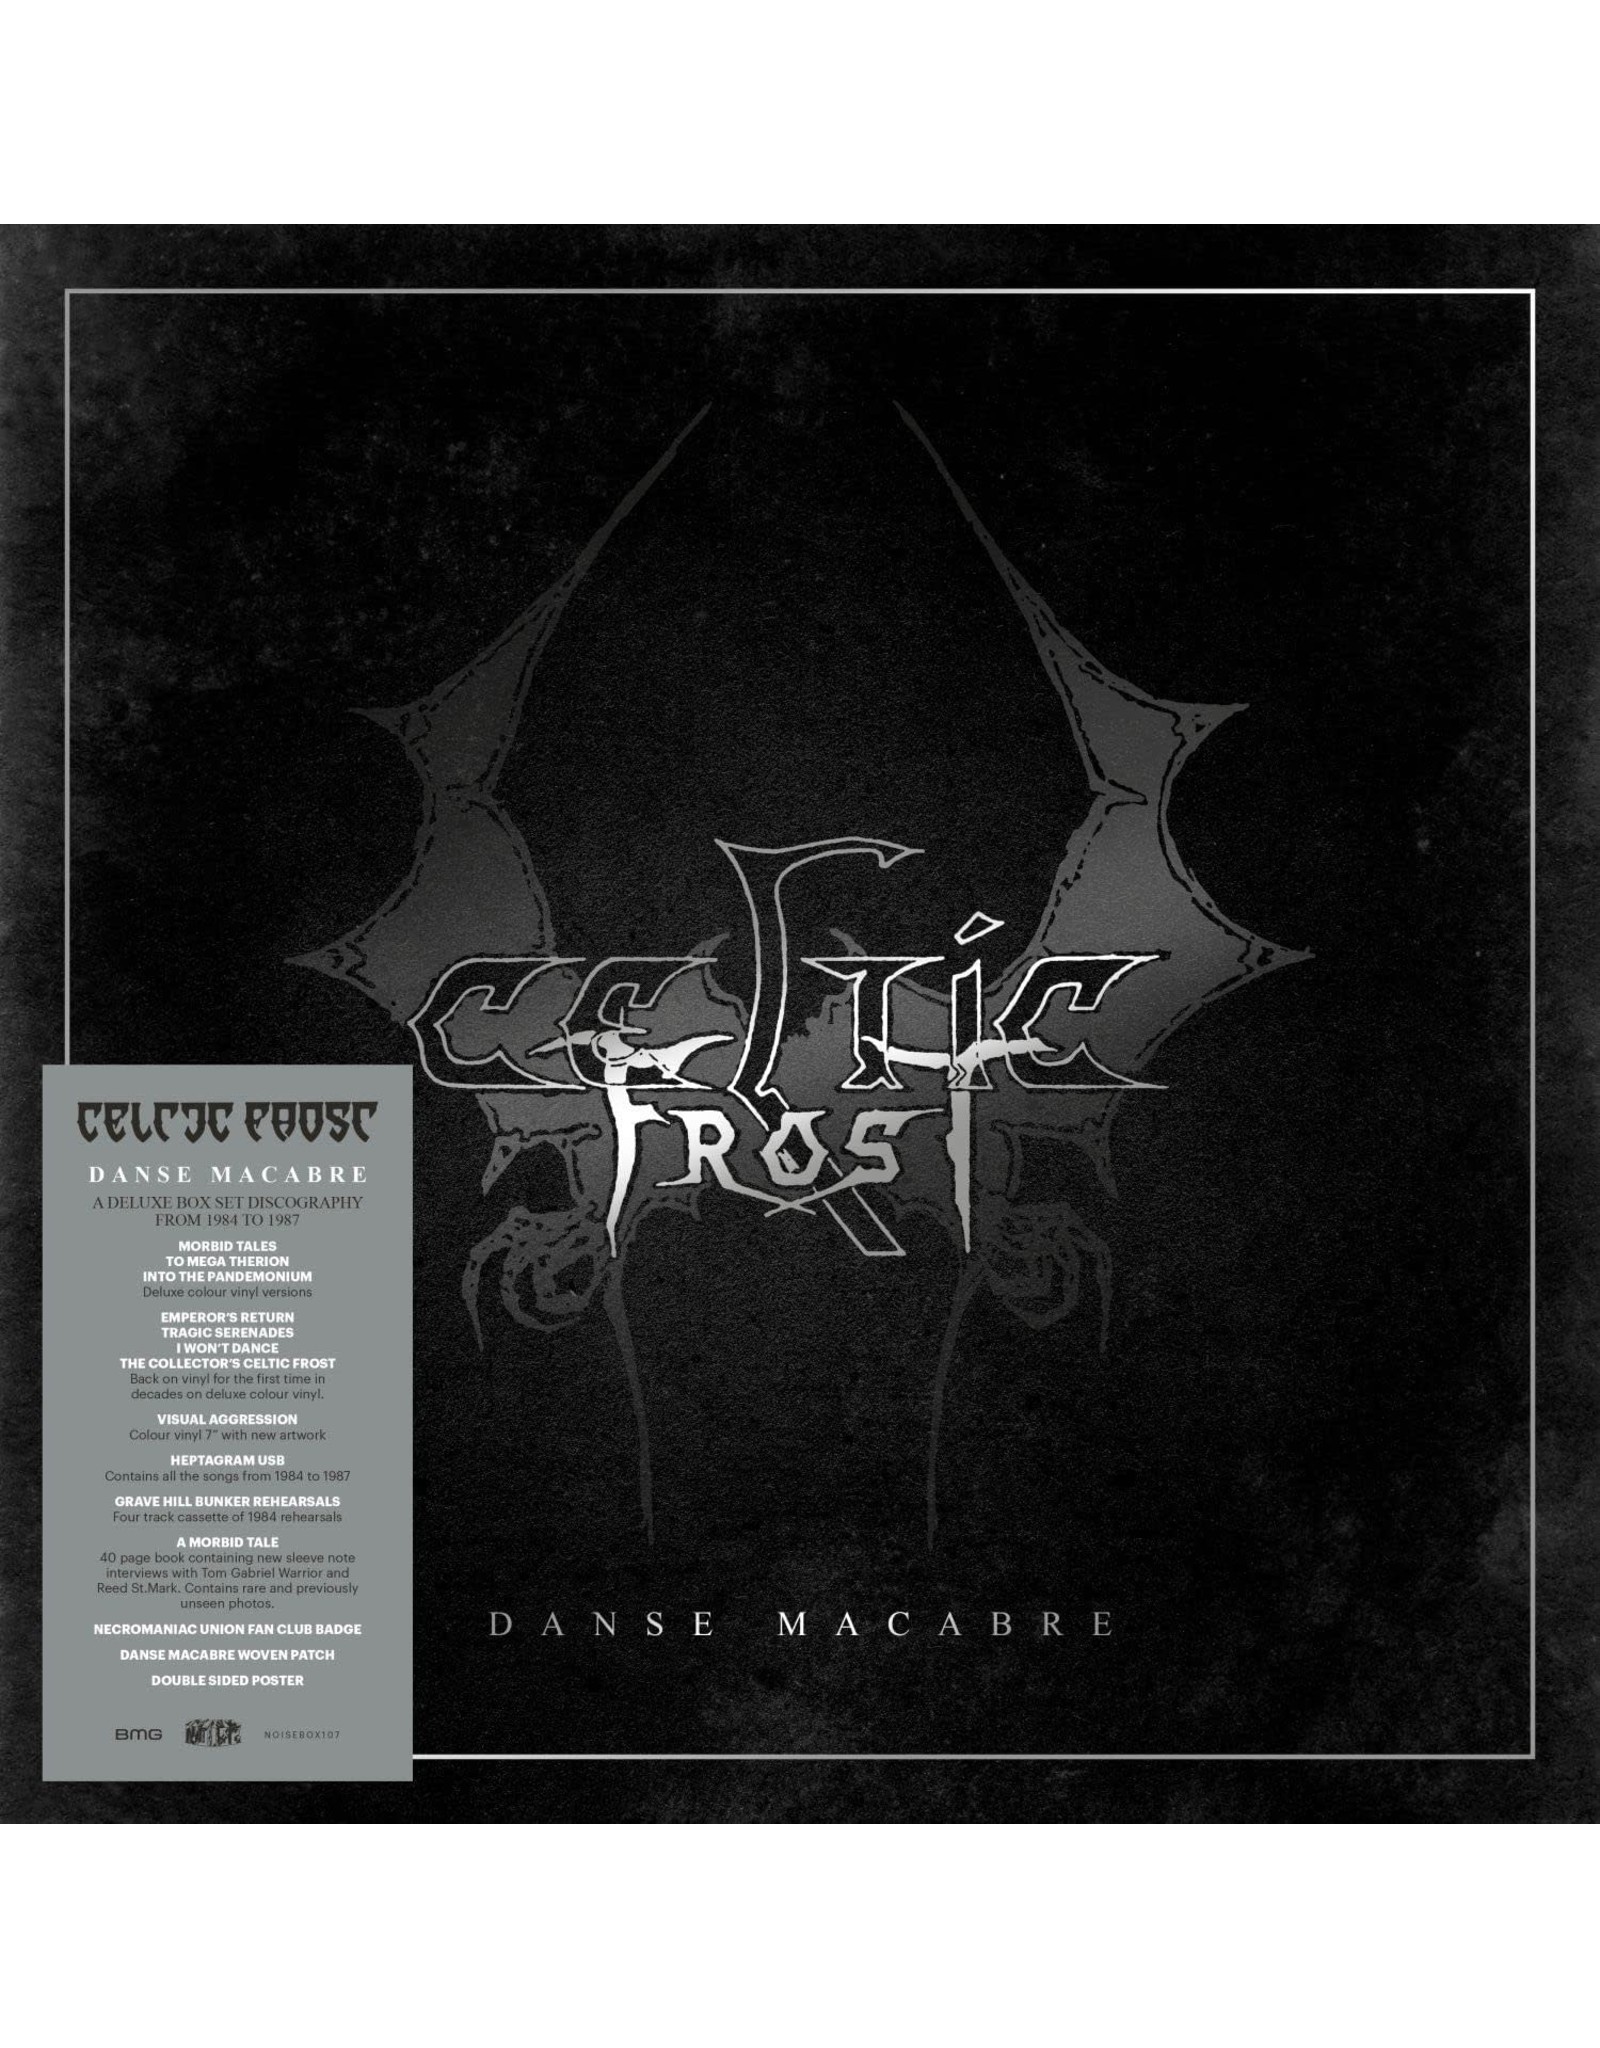 Celtic Frost - Danse Macabre (LP Box) (7LP marble/cassette/7" single/book)